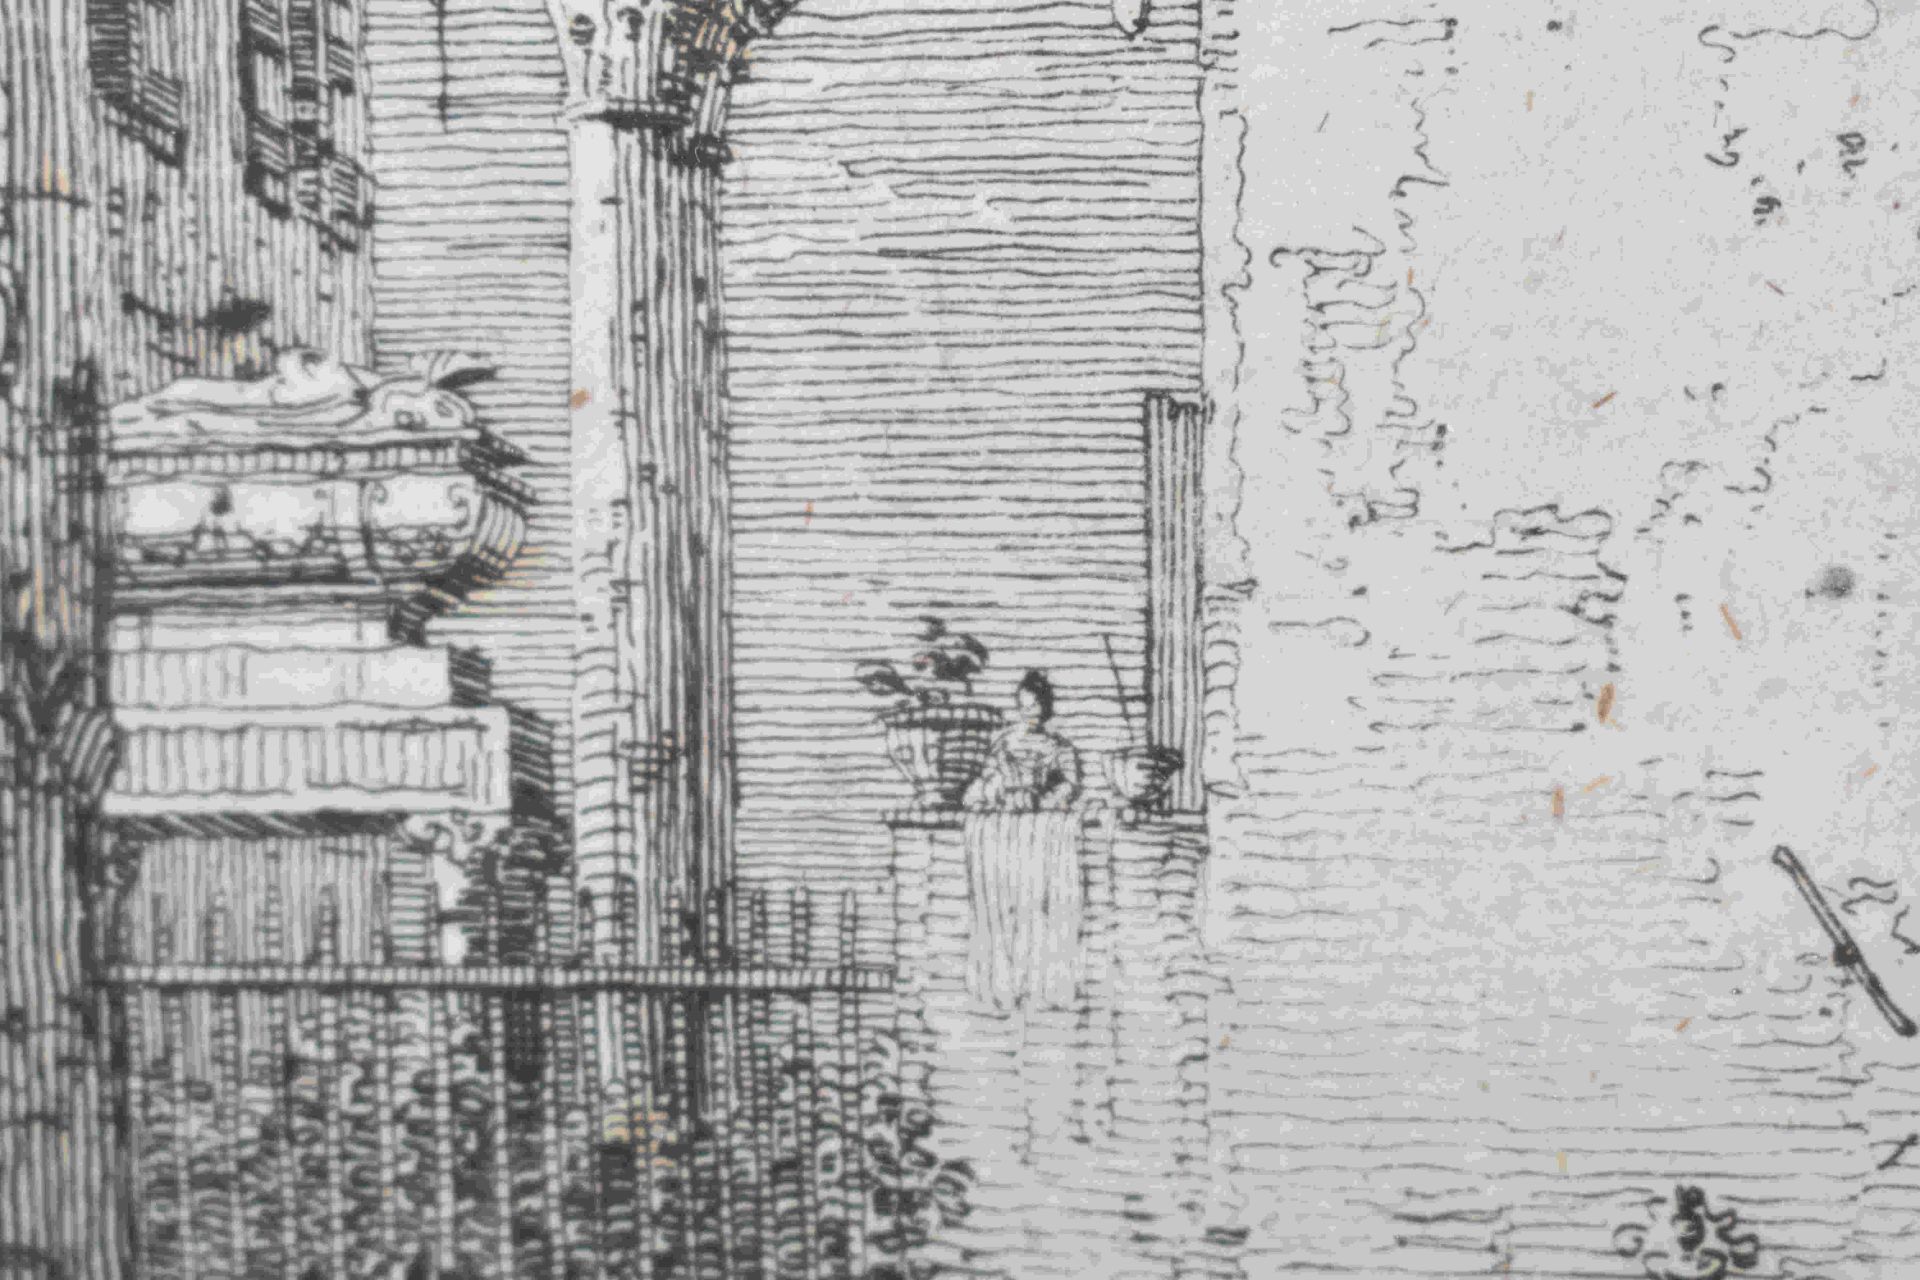 Canal, Giovanni Antonio, gen. Canaletto: Il portico con la lanterna - Bild 17 aus 24